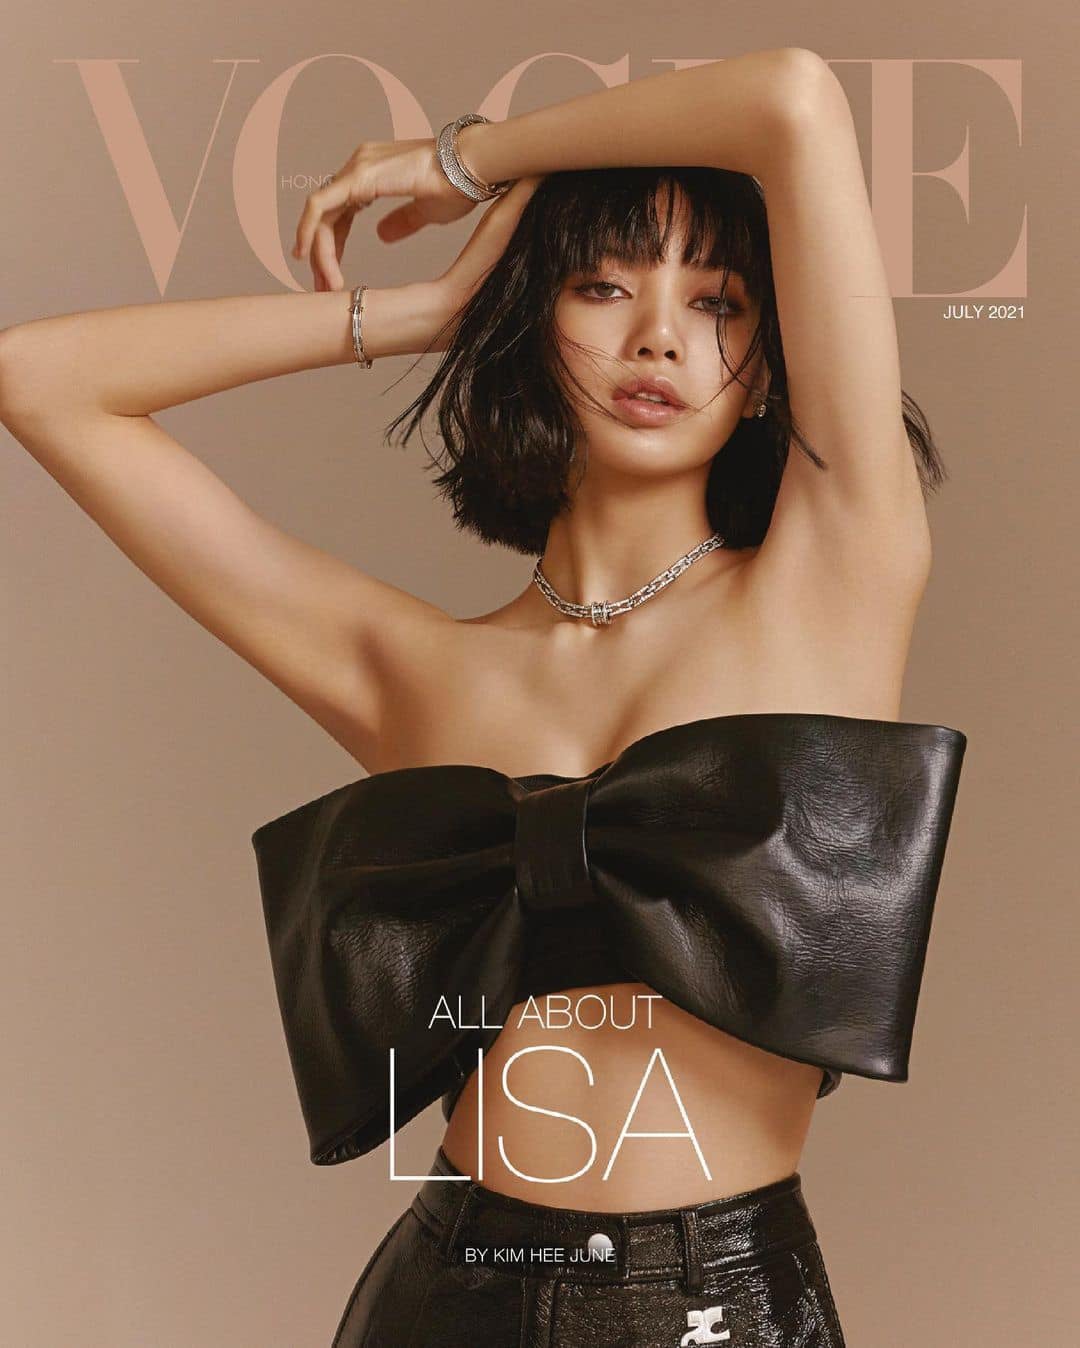 Lisa BLACKPINK trở thành gương mặt trang bìa số tháng 7 của tạp chí Vogue Hồng Kông. Chẳng còn kín đáo như mọi ngày, Lisa khoe ngực lấp ló và dáng chuẩn trong những bộ cánh bó sát và những chiếc croptop không thể gợi cảm hơn.